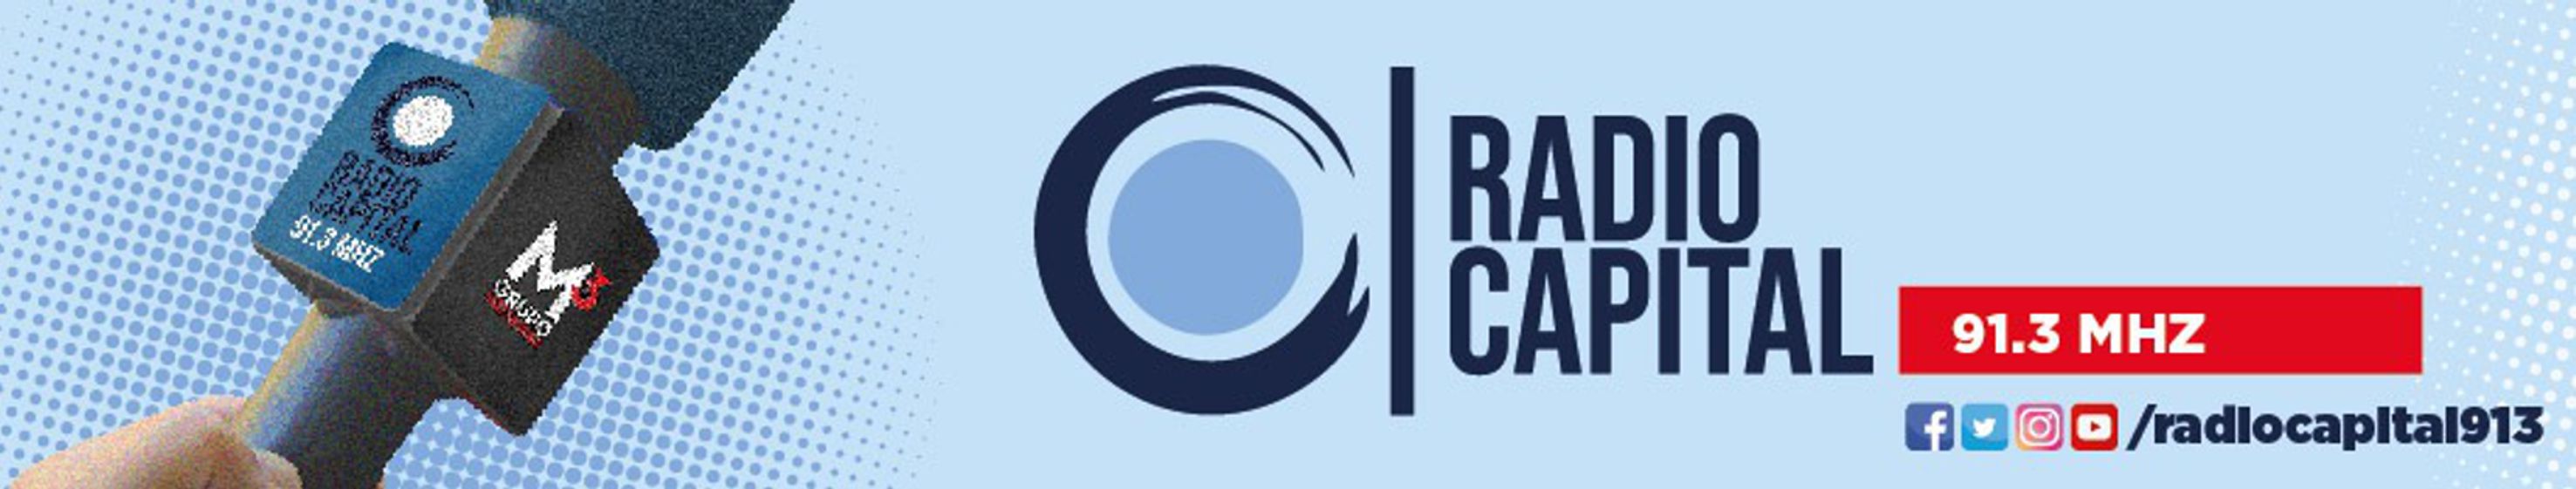 radiocapital913.com.ar